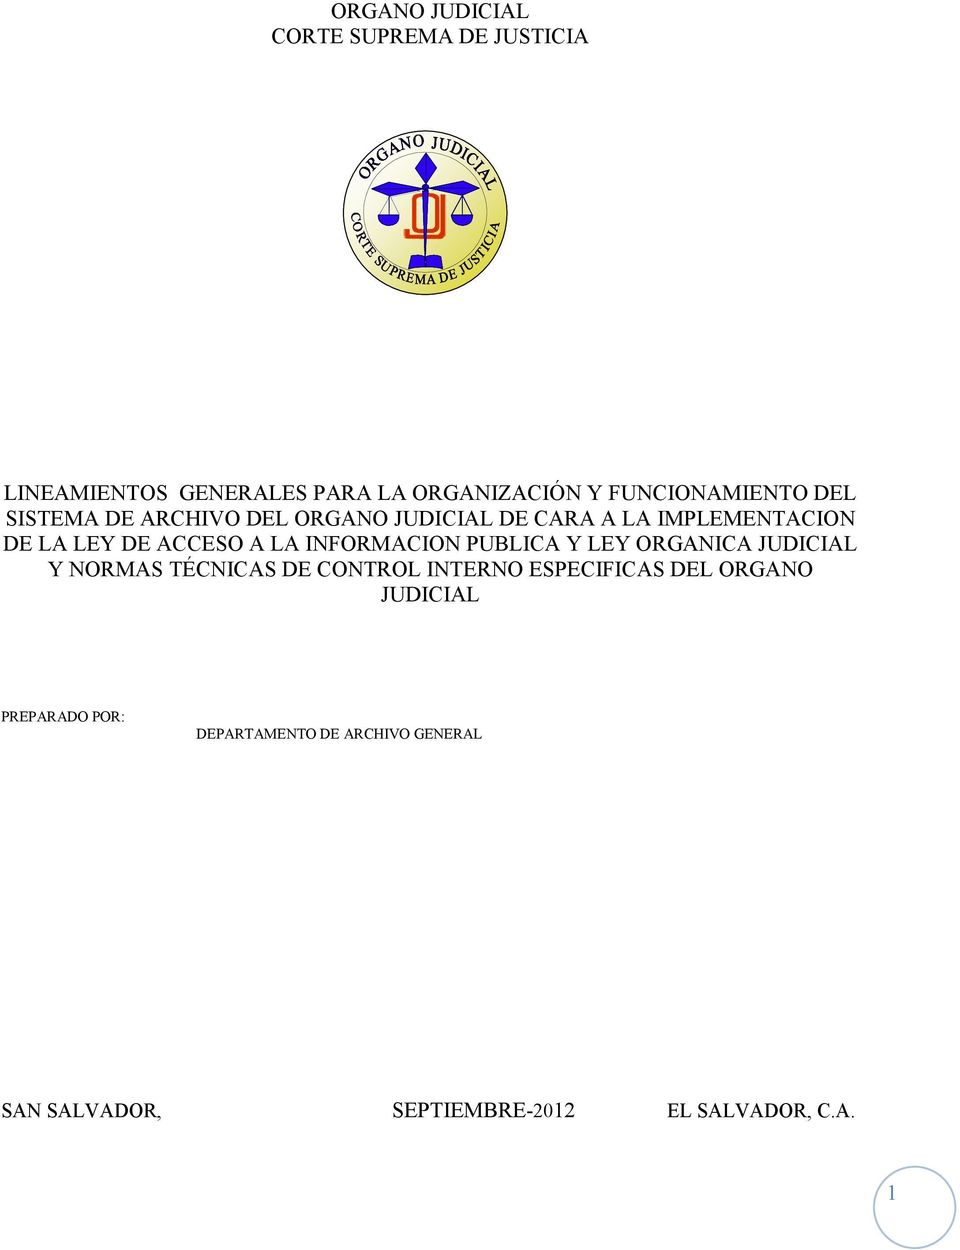 ACCESO A LA INFORMACION PUBLICA Y LEY ORGANICA JUDICIAL Y NORMAS TÉCNICAS DE CONTROL INTERNO